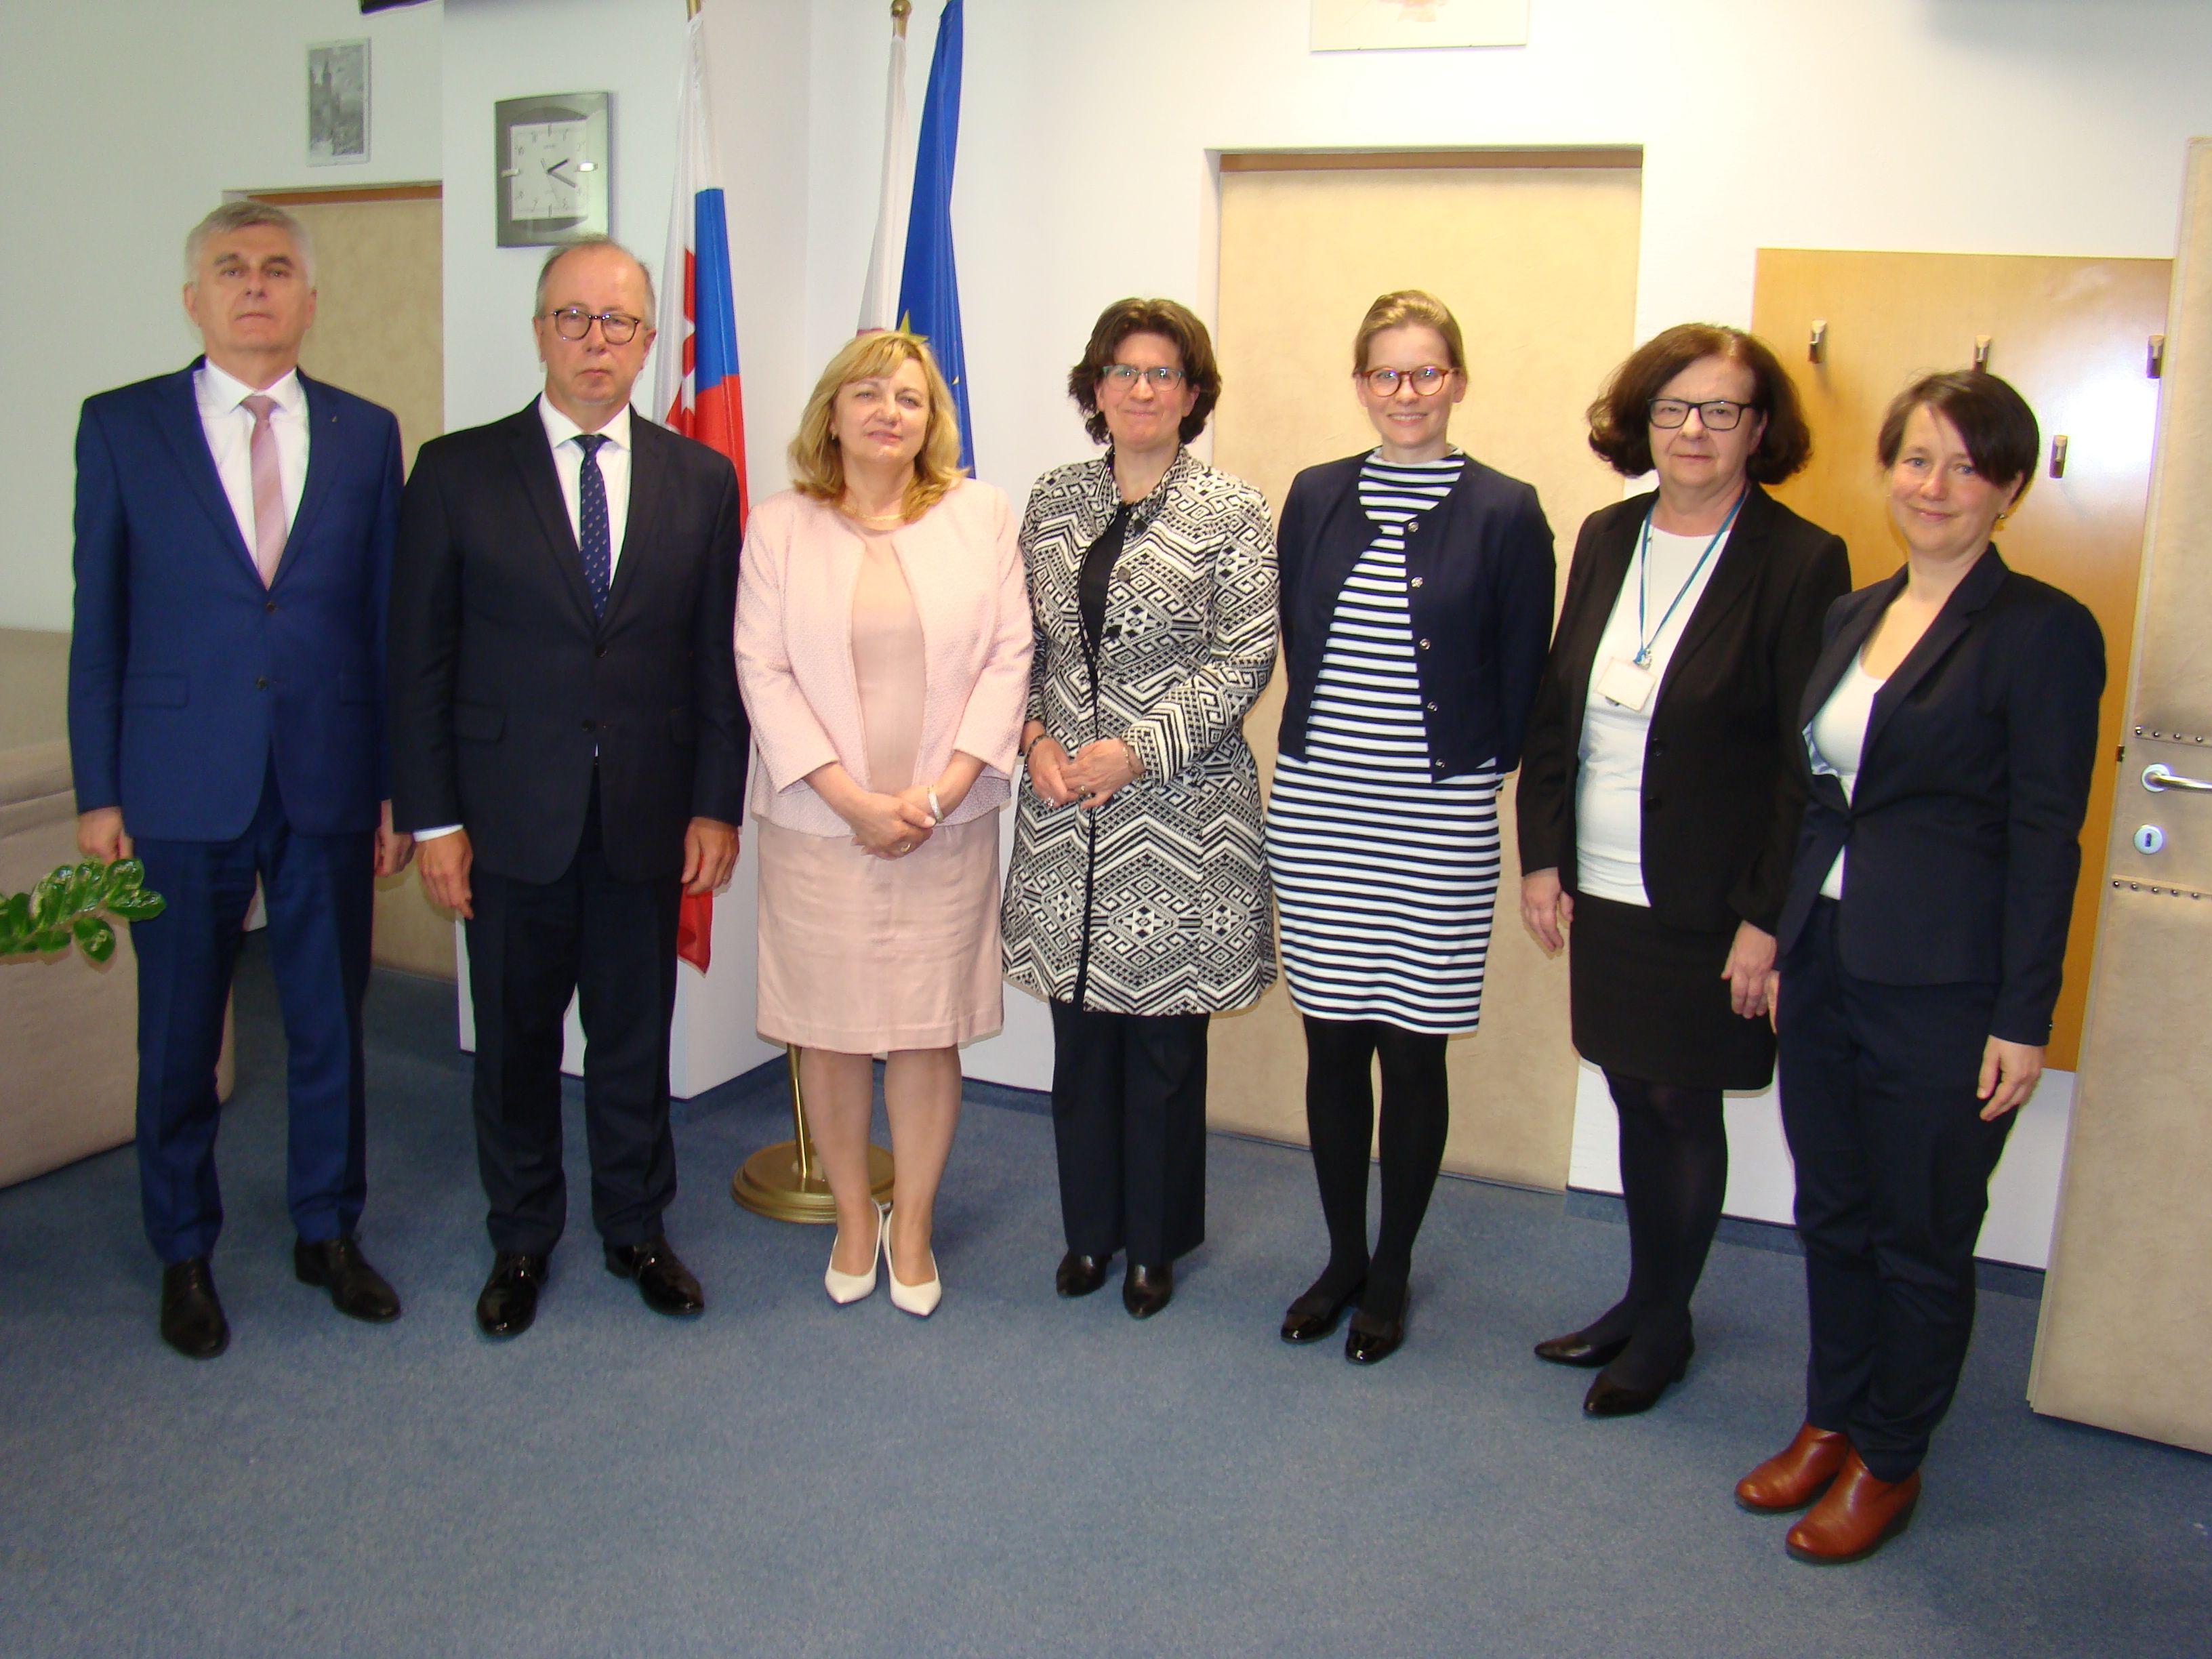 Prijatie veľvyslankyne Holandského kráľovstva v Slovenskej republike p. Gabrielly Sancisi v Justičnej akadémii SR v Pezinku